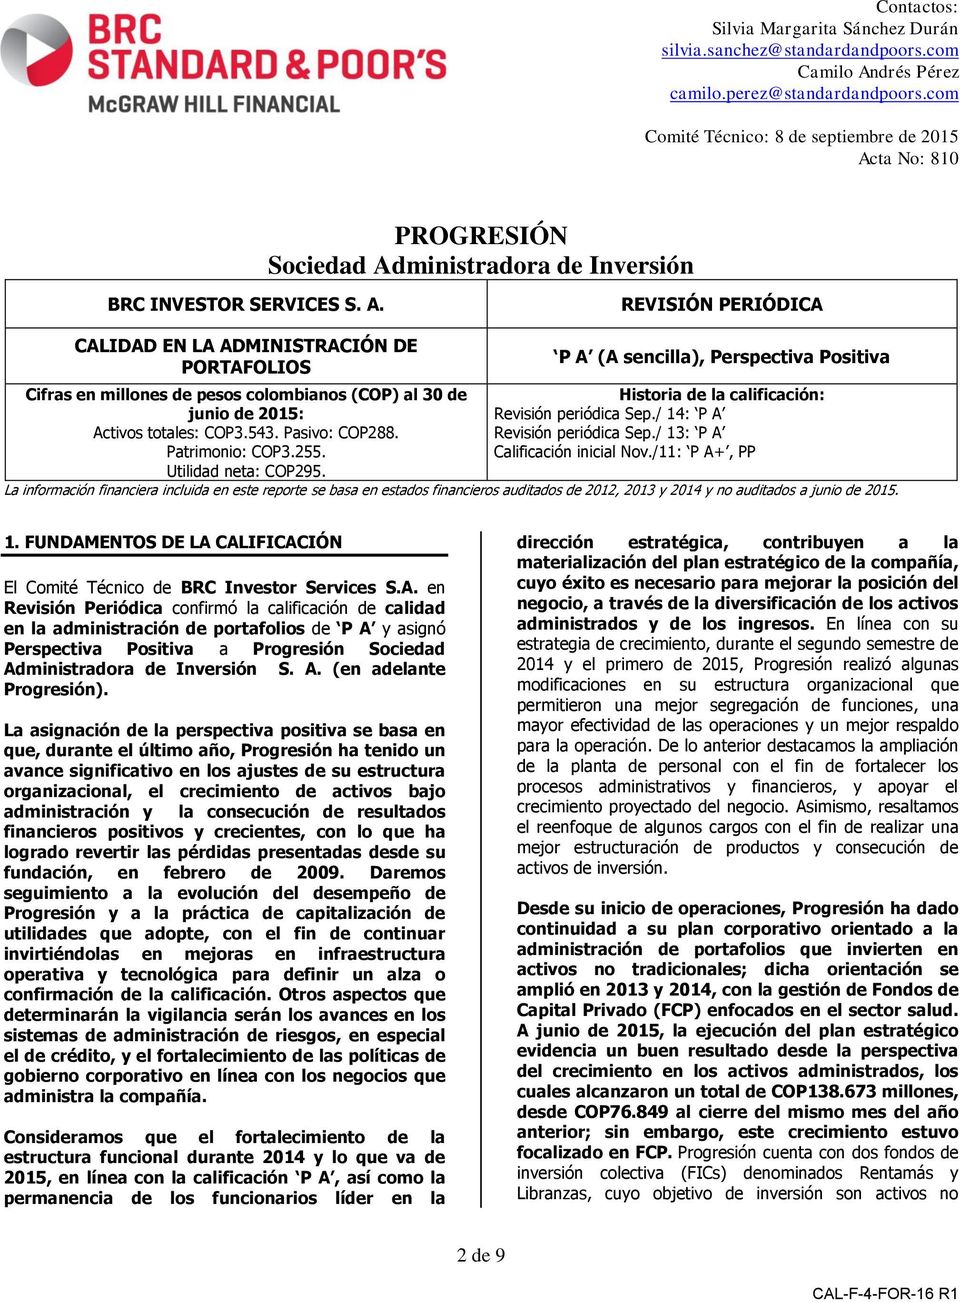 ta No: 810 PROGRESIÓN Sociedad Administradora de Inversión BRC INVESTOR SERVICES S. A. REVISIÓN PERIÓDICA CALIDAD EN LA ADMINISTRACIÓN DE PORTAFOLIOS Cifras en millones de pesos colombianos (COP) al 30 de junio de 2015: Activos totales: COP3.